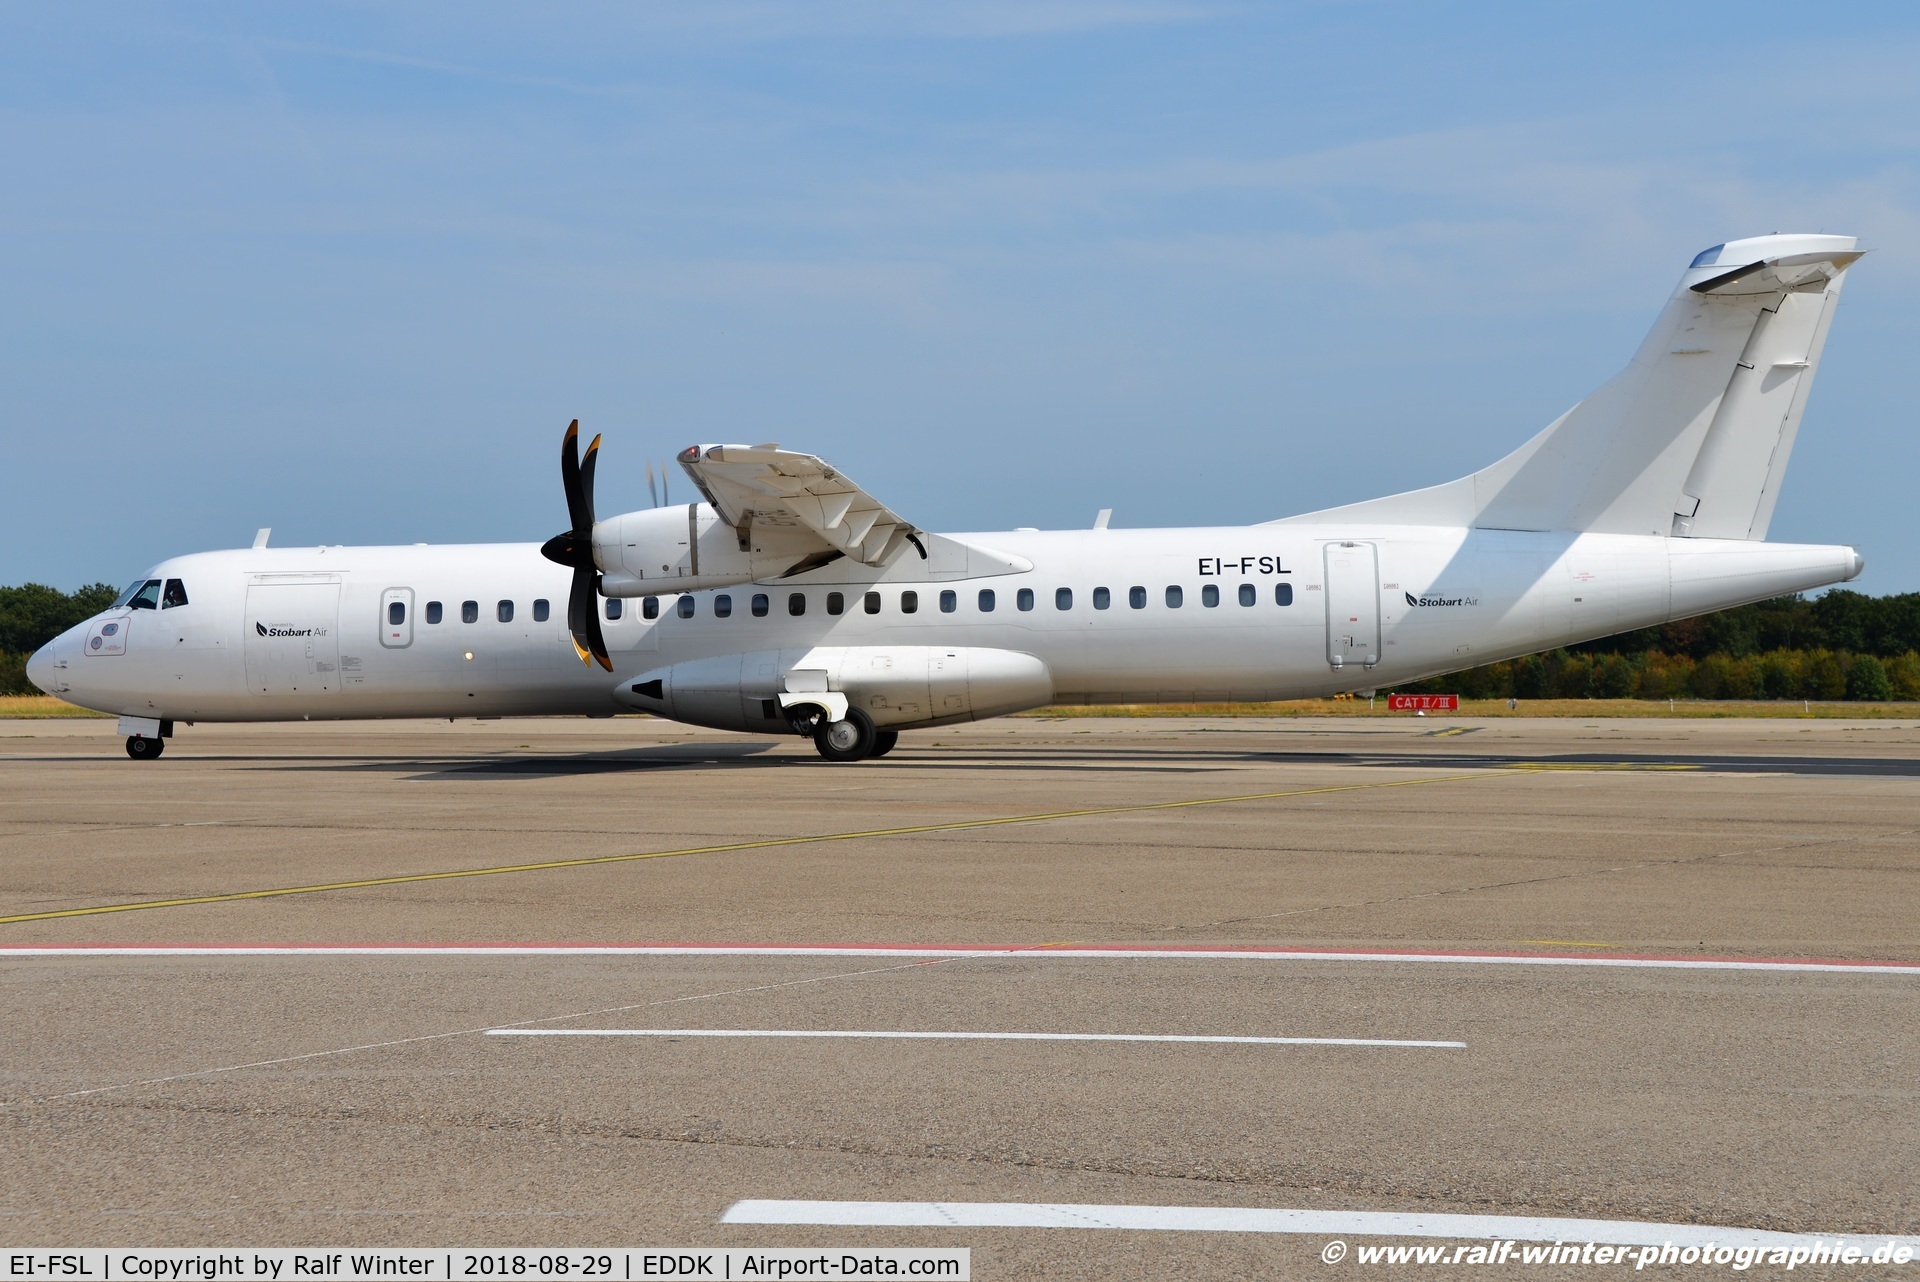 EI-FSL, 2016 ATR 72-212A C/N 1339, ATR 72-212A 600 - STK Stobart Air - 1339 - EI-FSL - 29.08.2018 - CGN